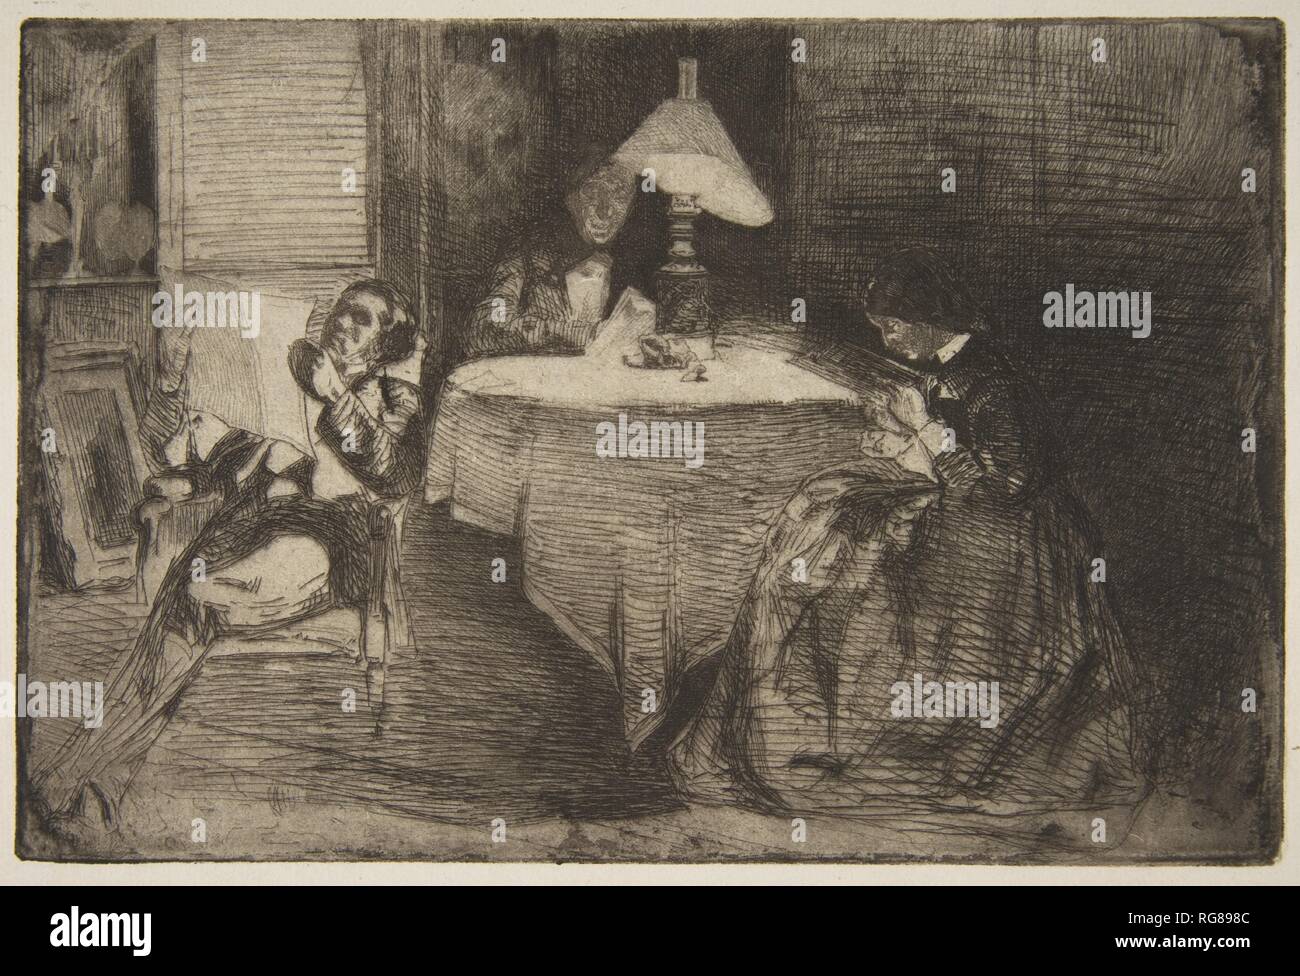 La Sala della Musica. Artista: James McNeill Whistler (American, Lowell Massachusetts 1834-1903 Londra). Dimensioni: Piastra: 5 11/16 x 8 1/2 in. (14,4 x 21,6 cm) foglio: 9 13/16 × 15 1/4 in. (25 × 38,7 cm). Data: 1859. Museo: Metropolitan Museum of Art di New York, Stati Uniti d'America. Foto Stock